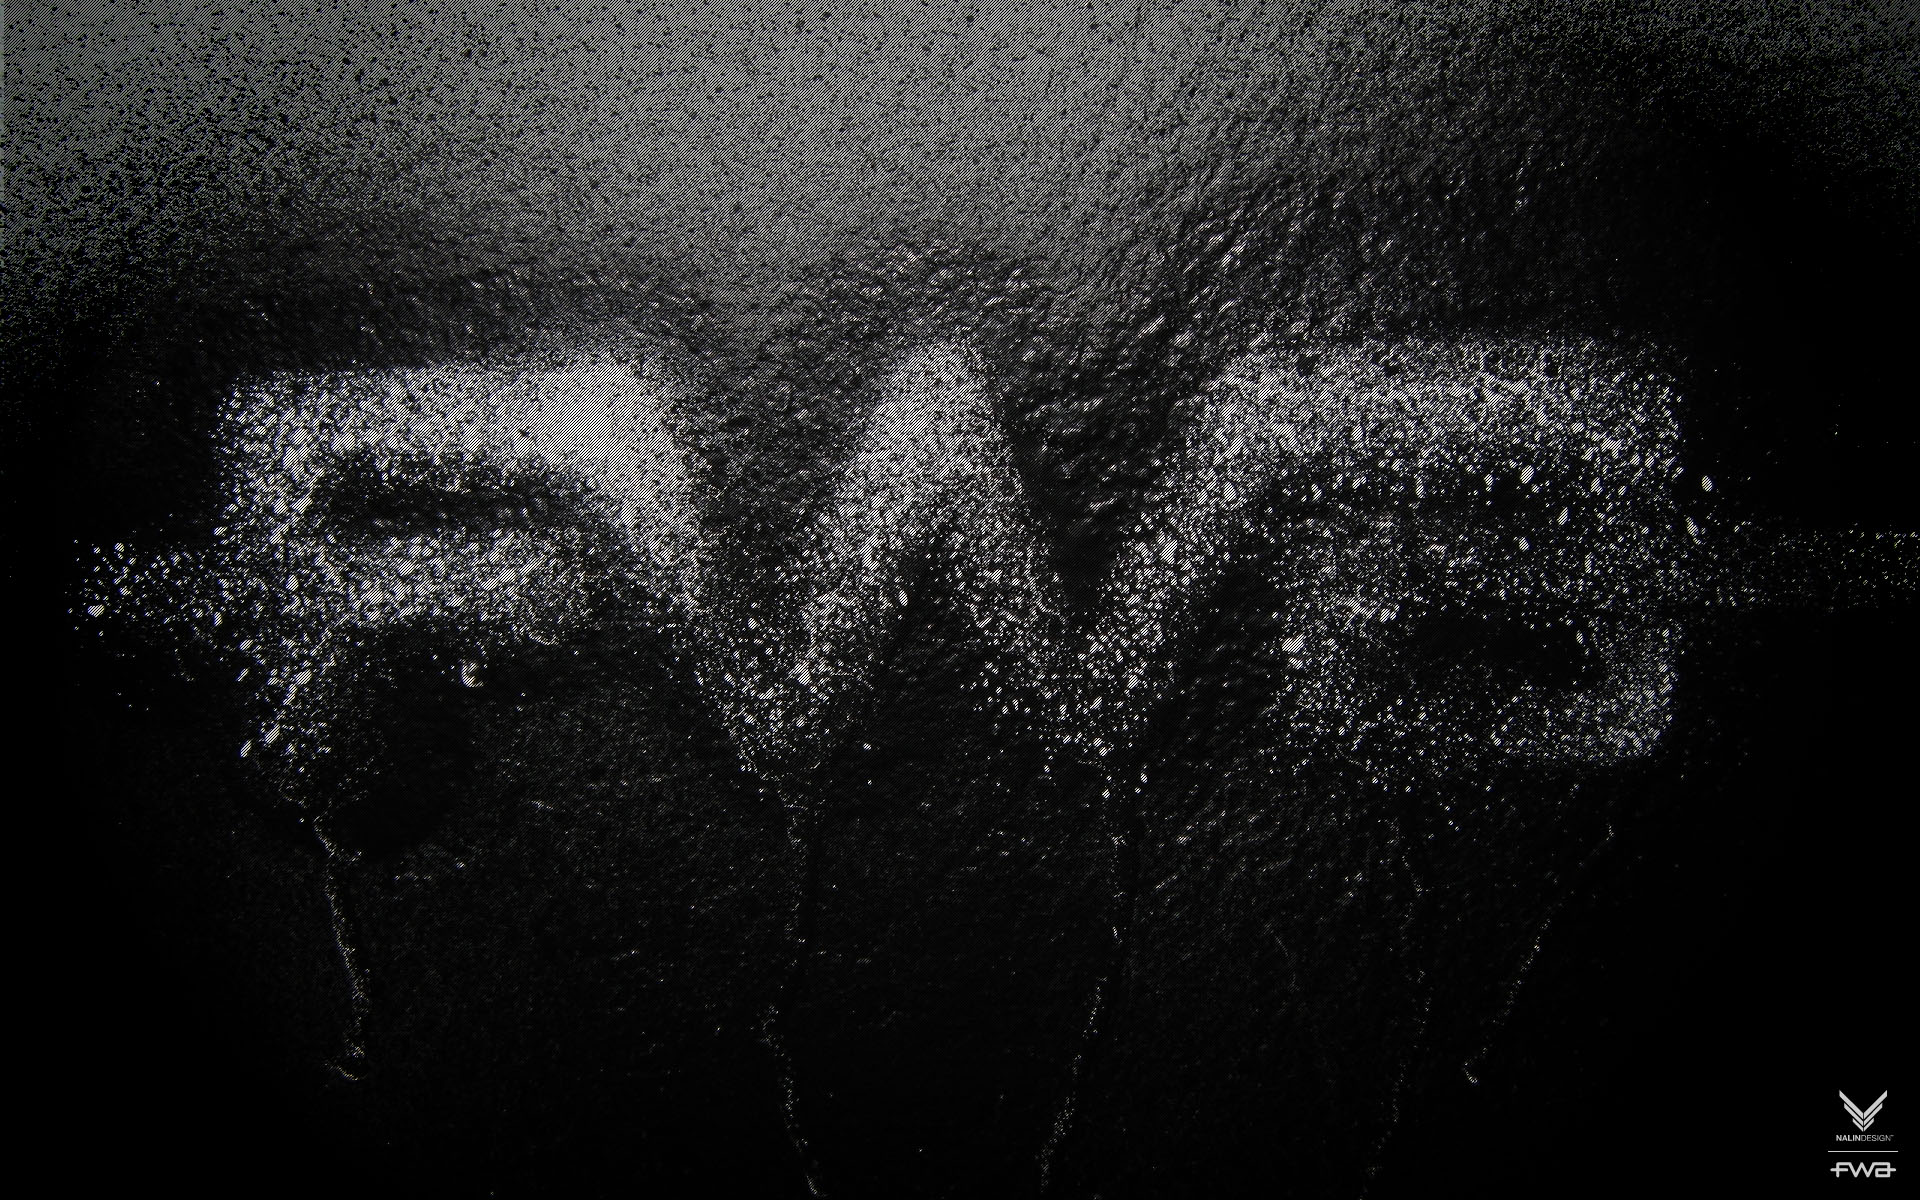 壁纸1920x1200FWA黑色专辑 1 11壁纸 其他品牌 FWA黑色专辑 第一辑壁纸 其他品牌 FWA黑色专辑 第一辑图片 其他品牌 FWA黑色专辑 第一辑素材 品牌壁纸 品牌图库 品牌图片素材桌面壁纸